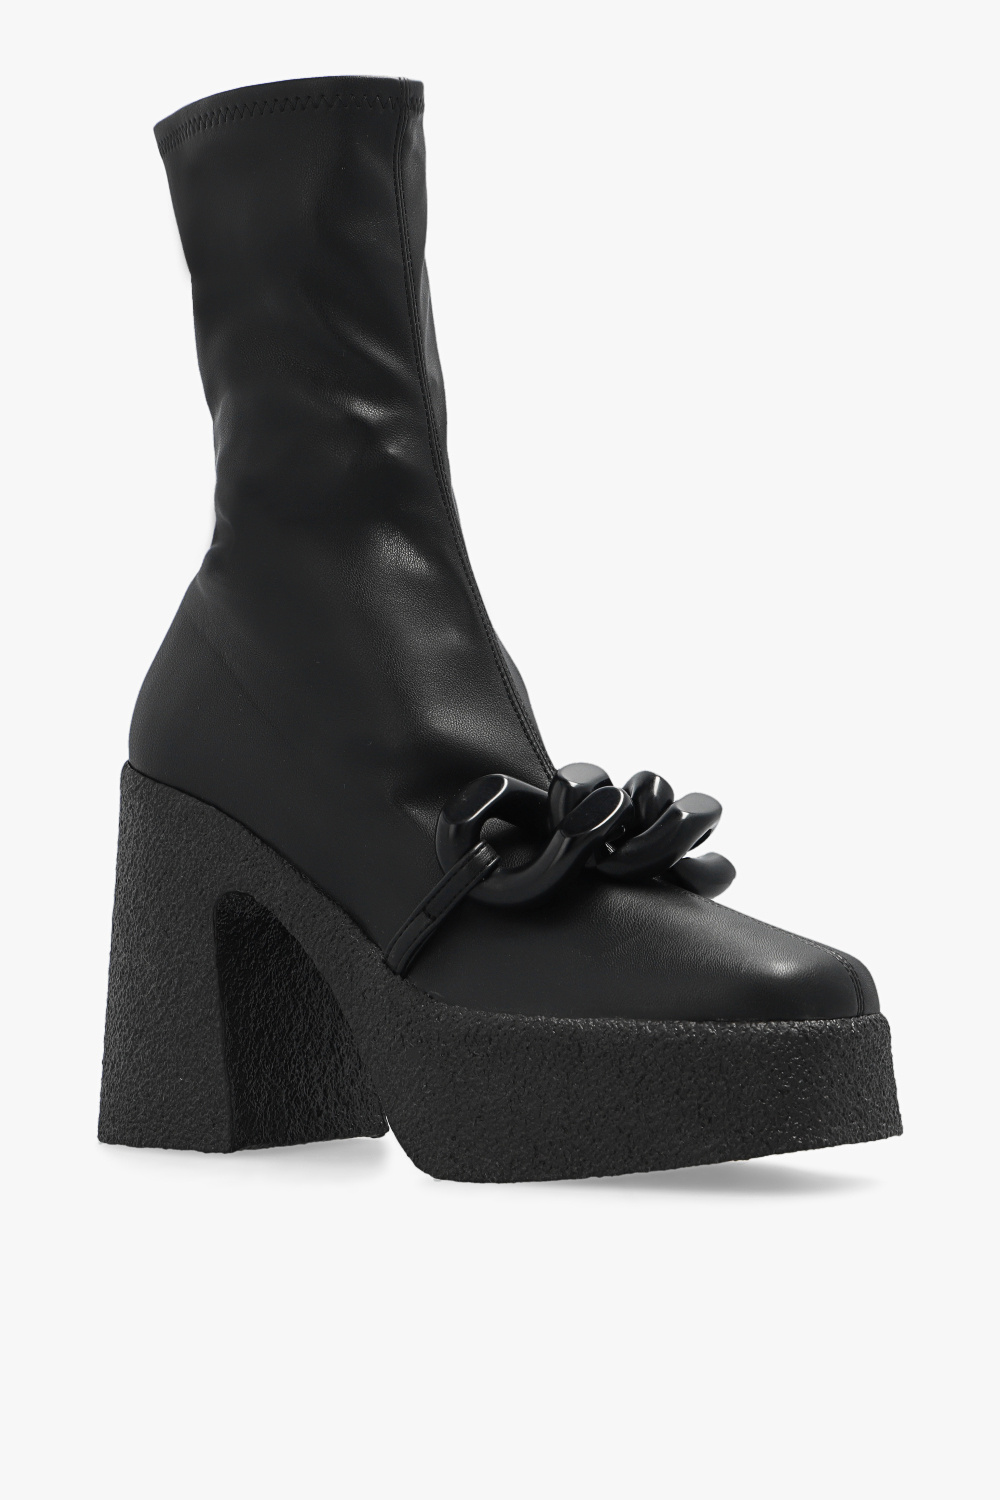 Stella McCartney ‘Skyla’ platform ankle boots